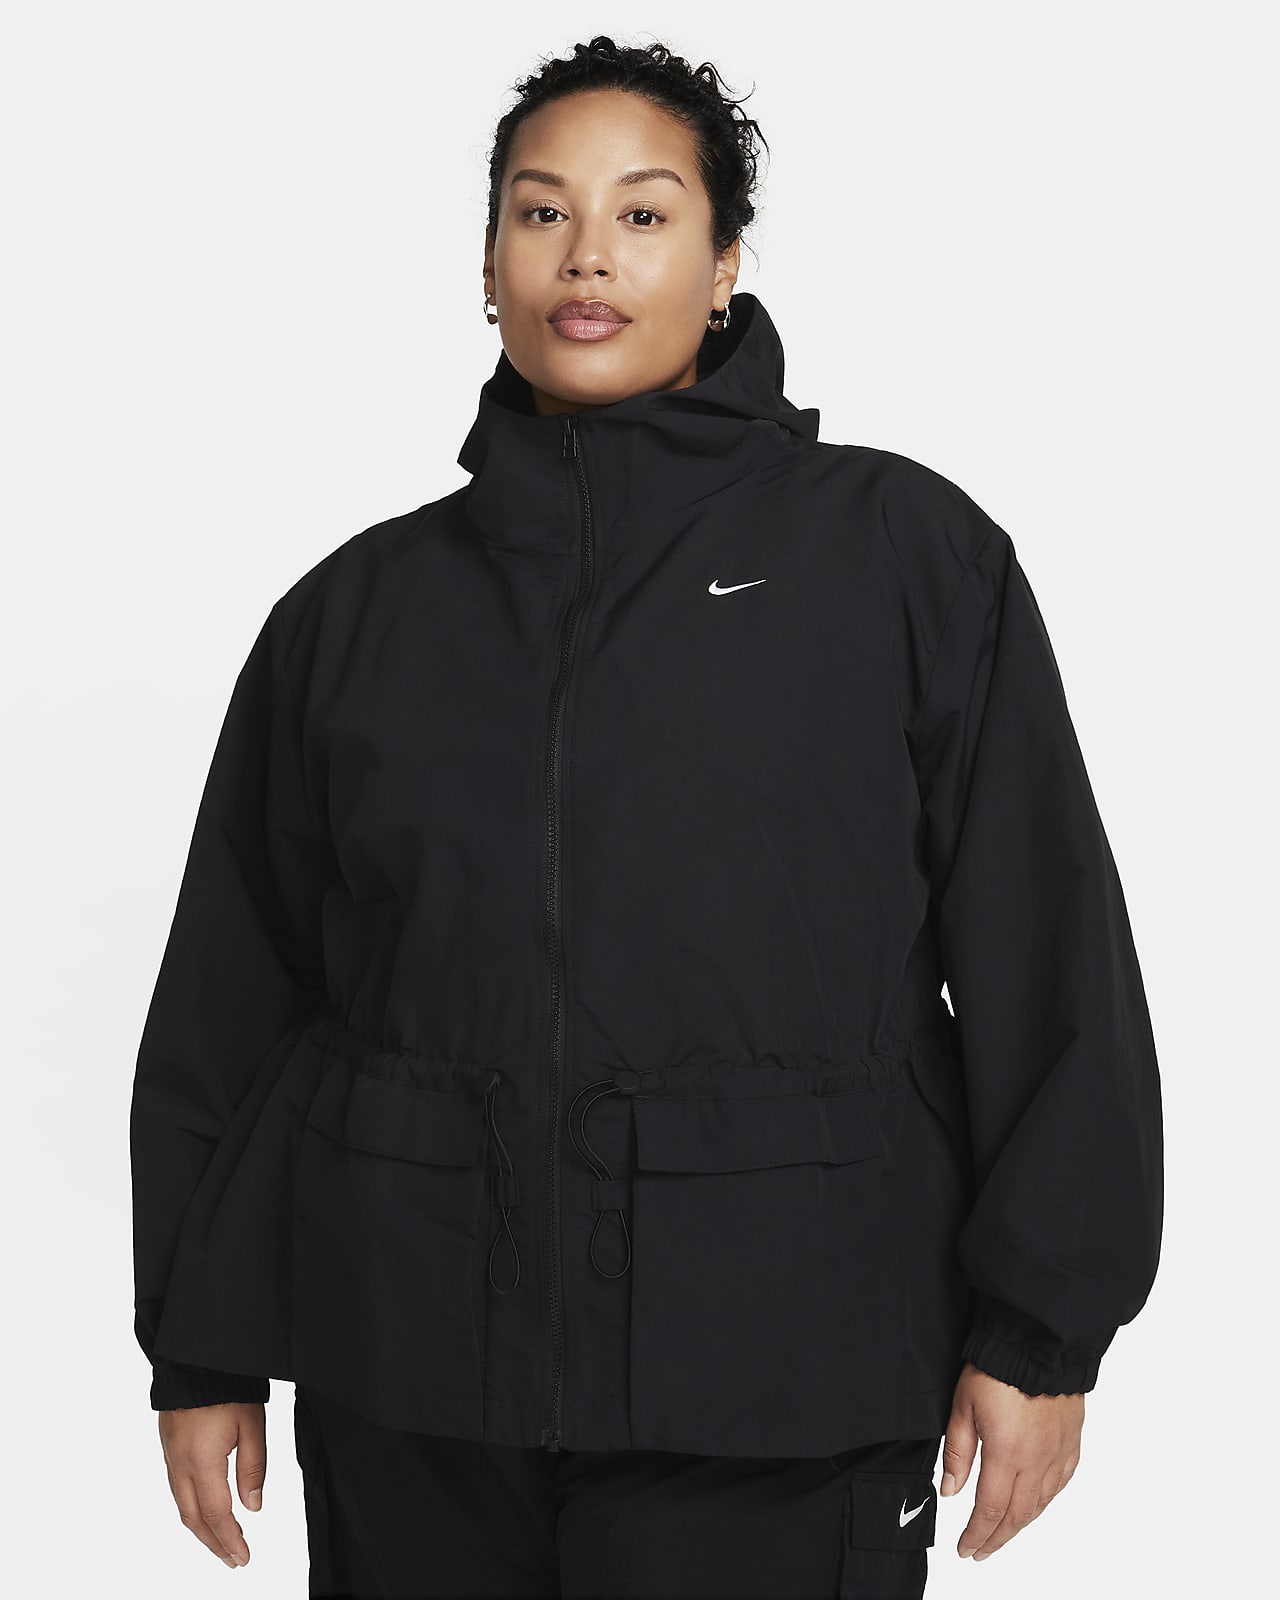 Hooded Nike Sportswear Repel Women s Woven Jacket 